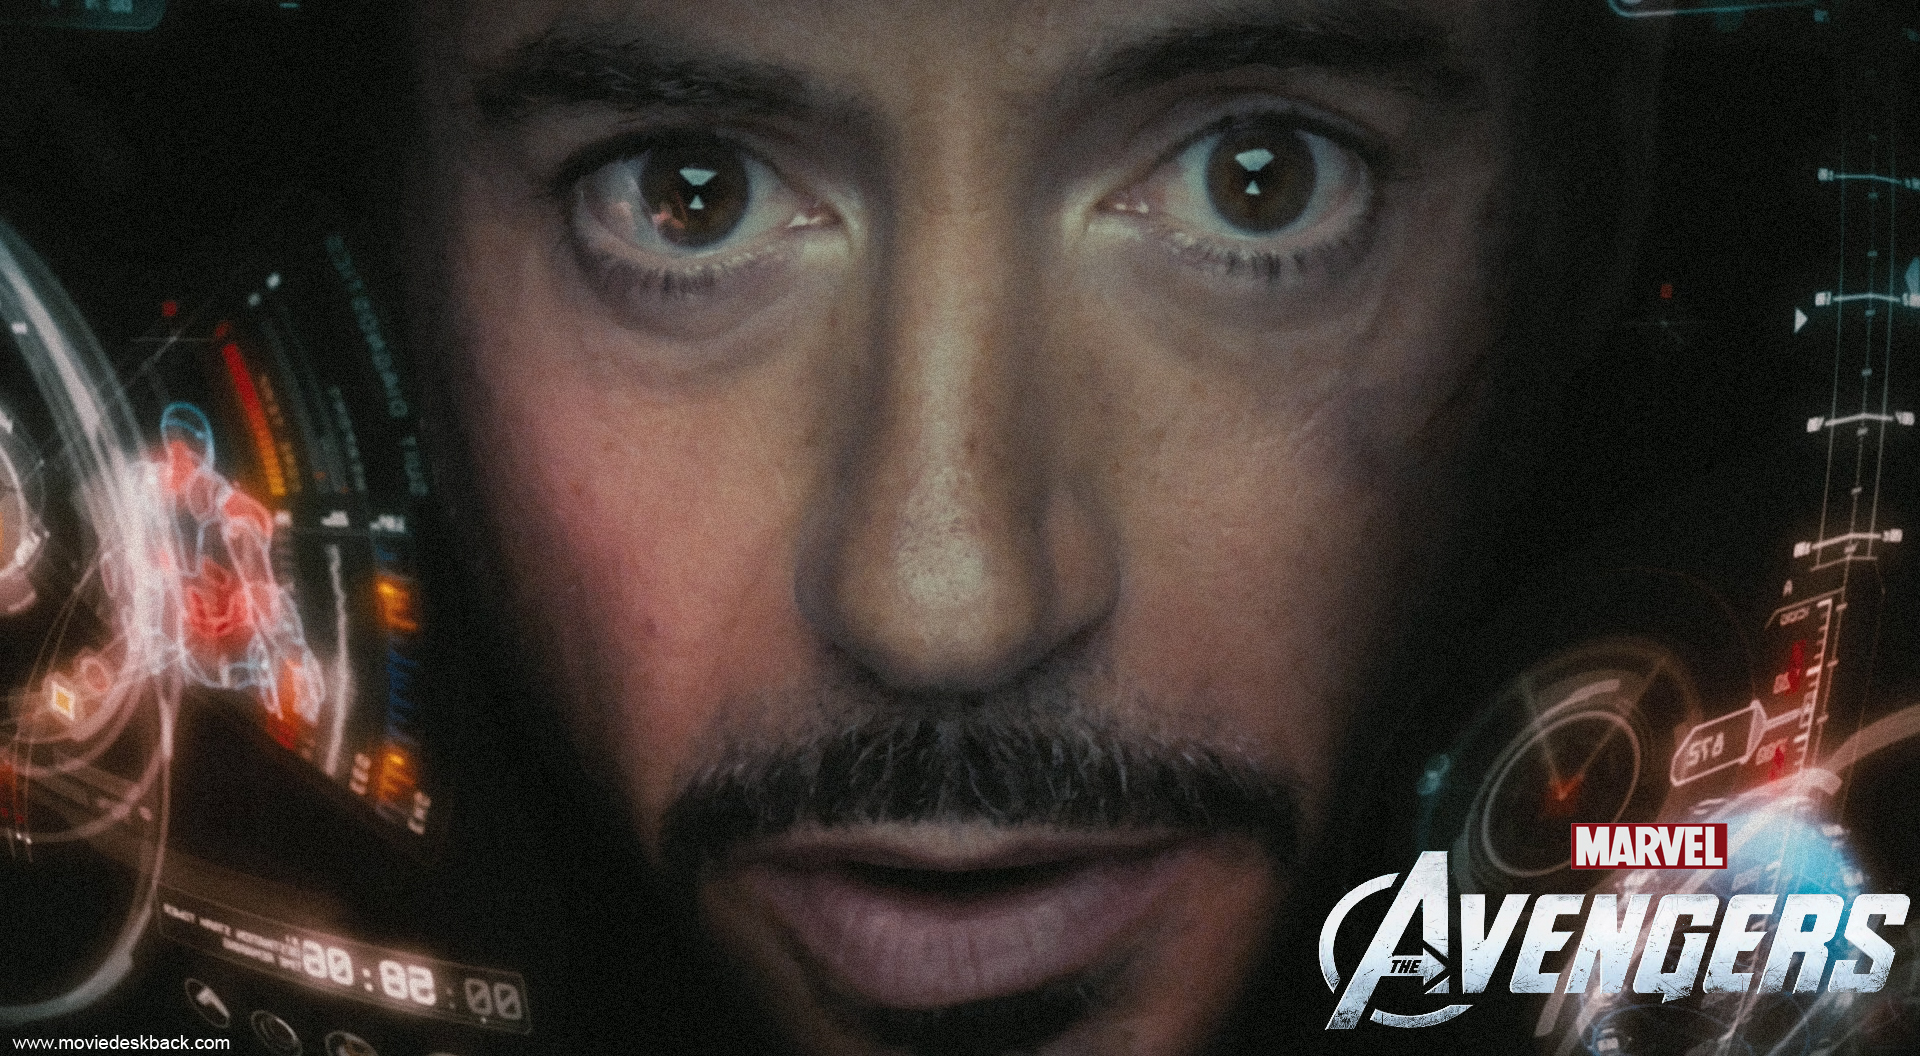 The Avengers Robert Downey Jr As Iron Man